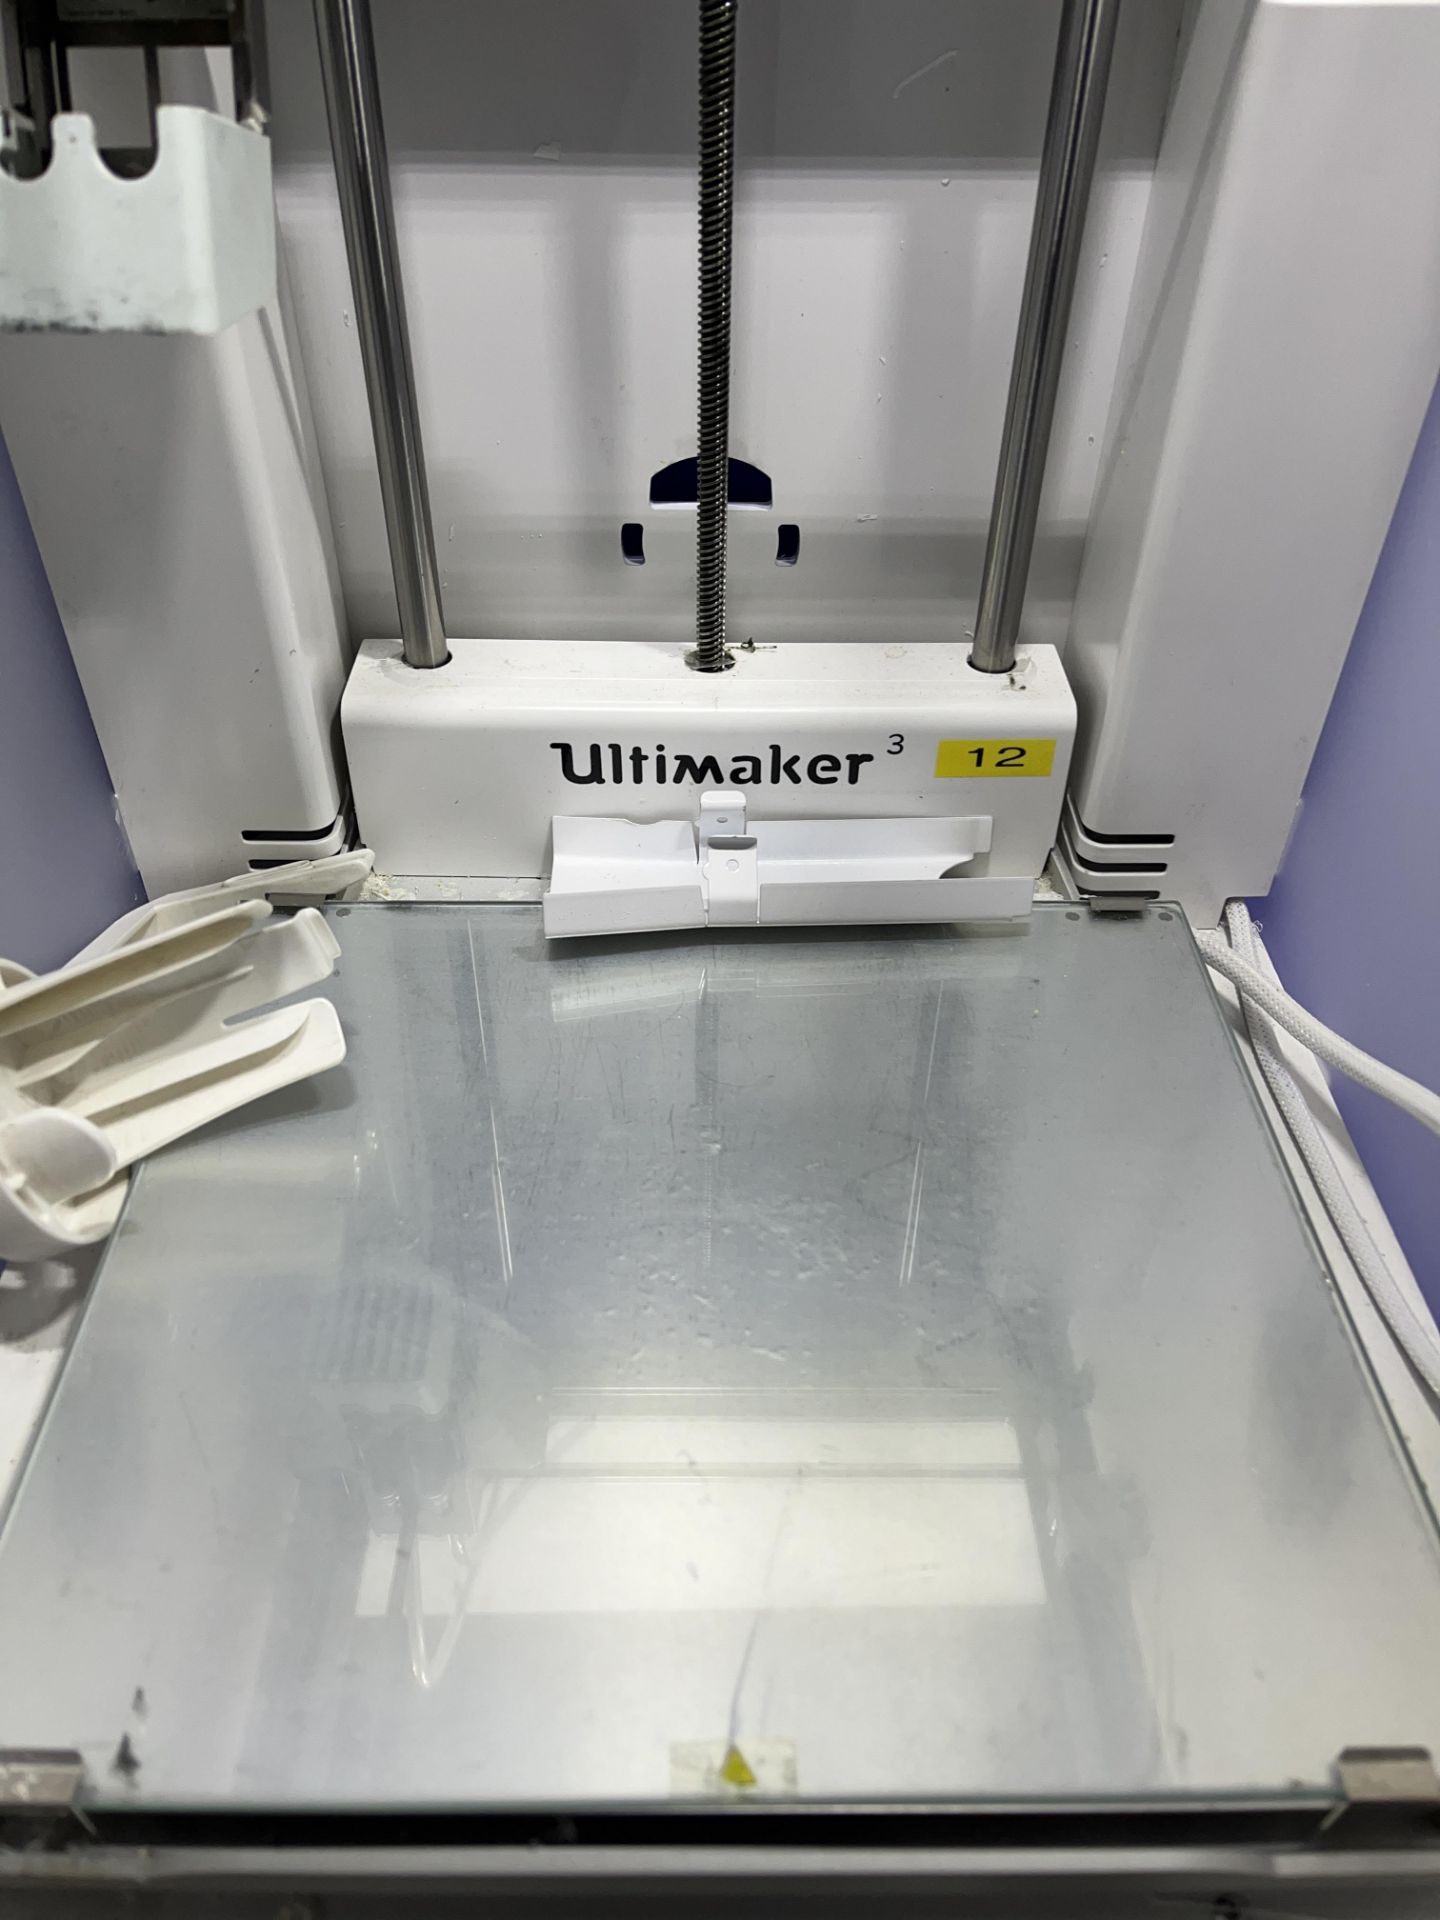 Ultimaker Model 3 3D printer - Image 2 of 6